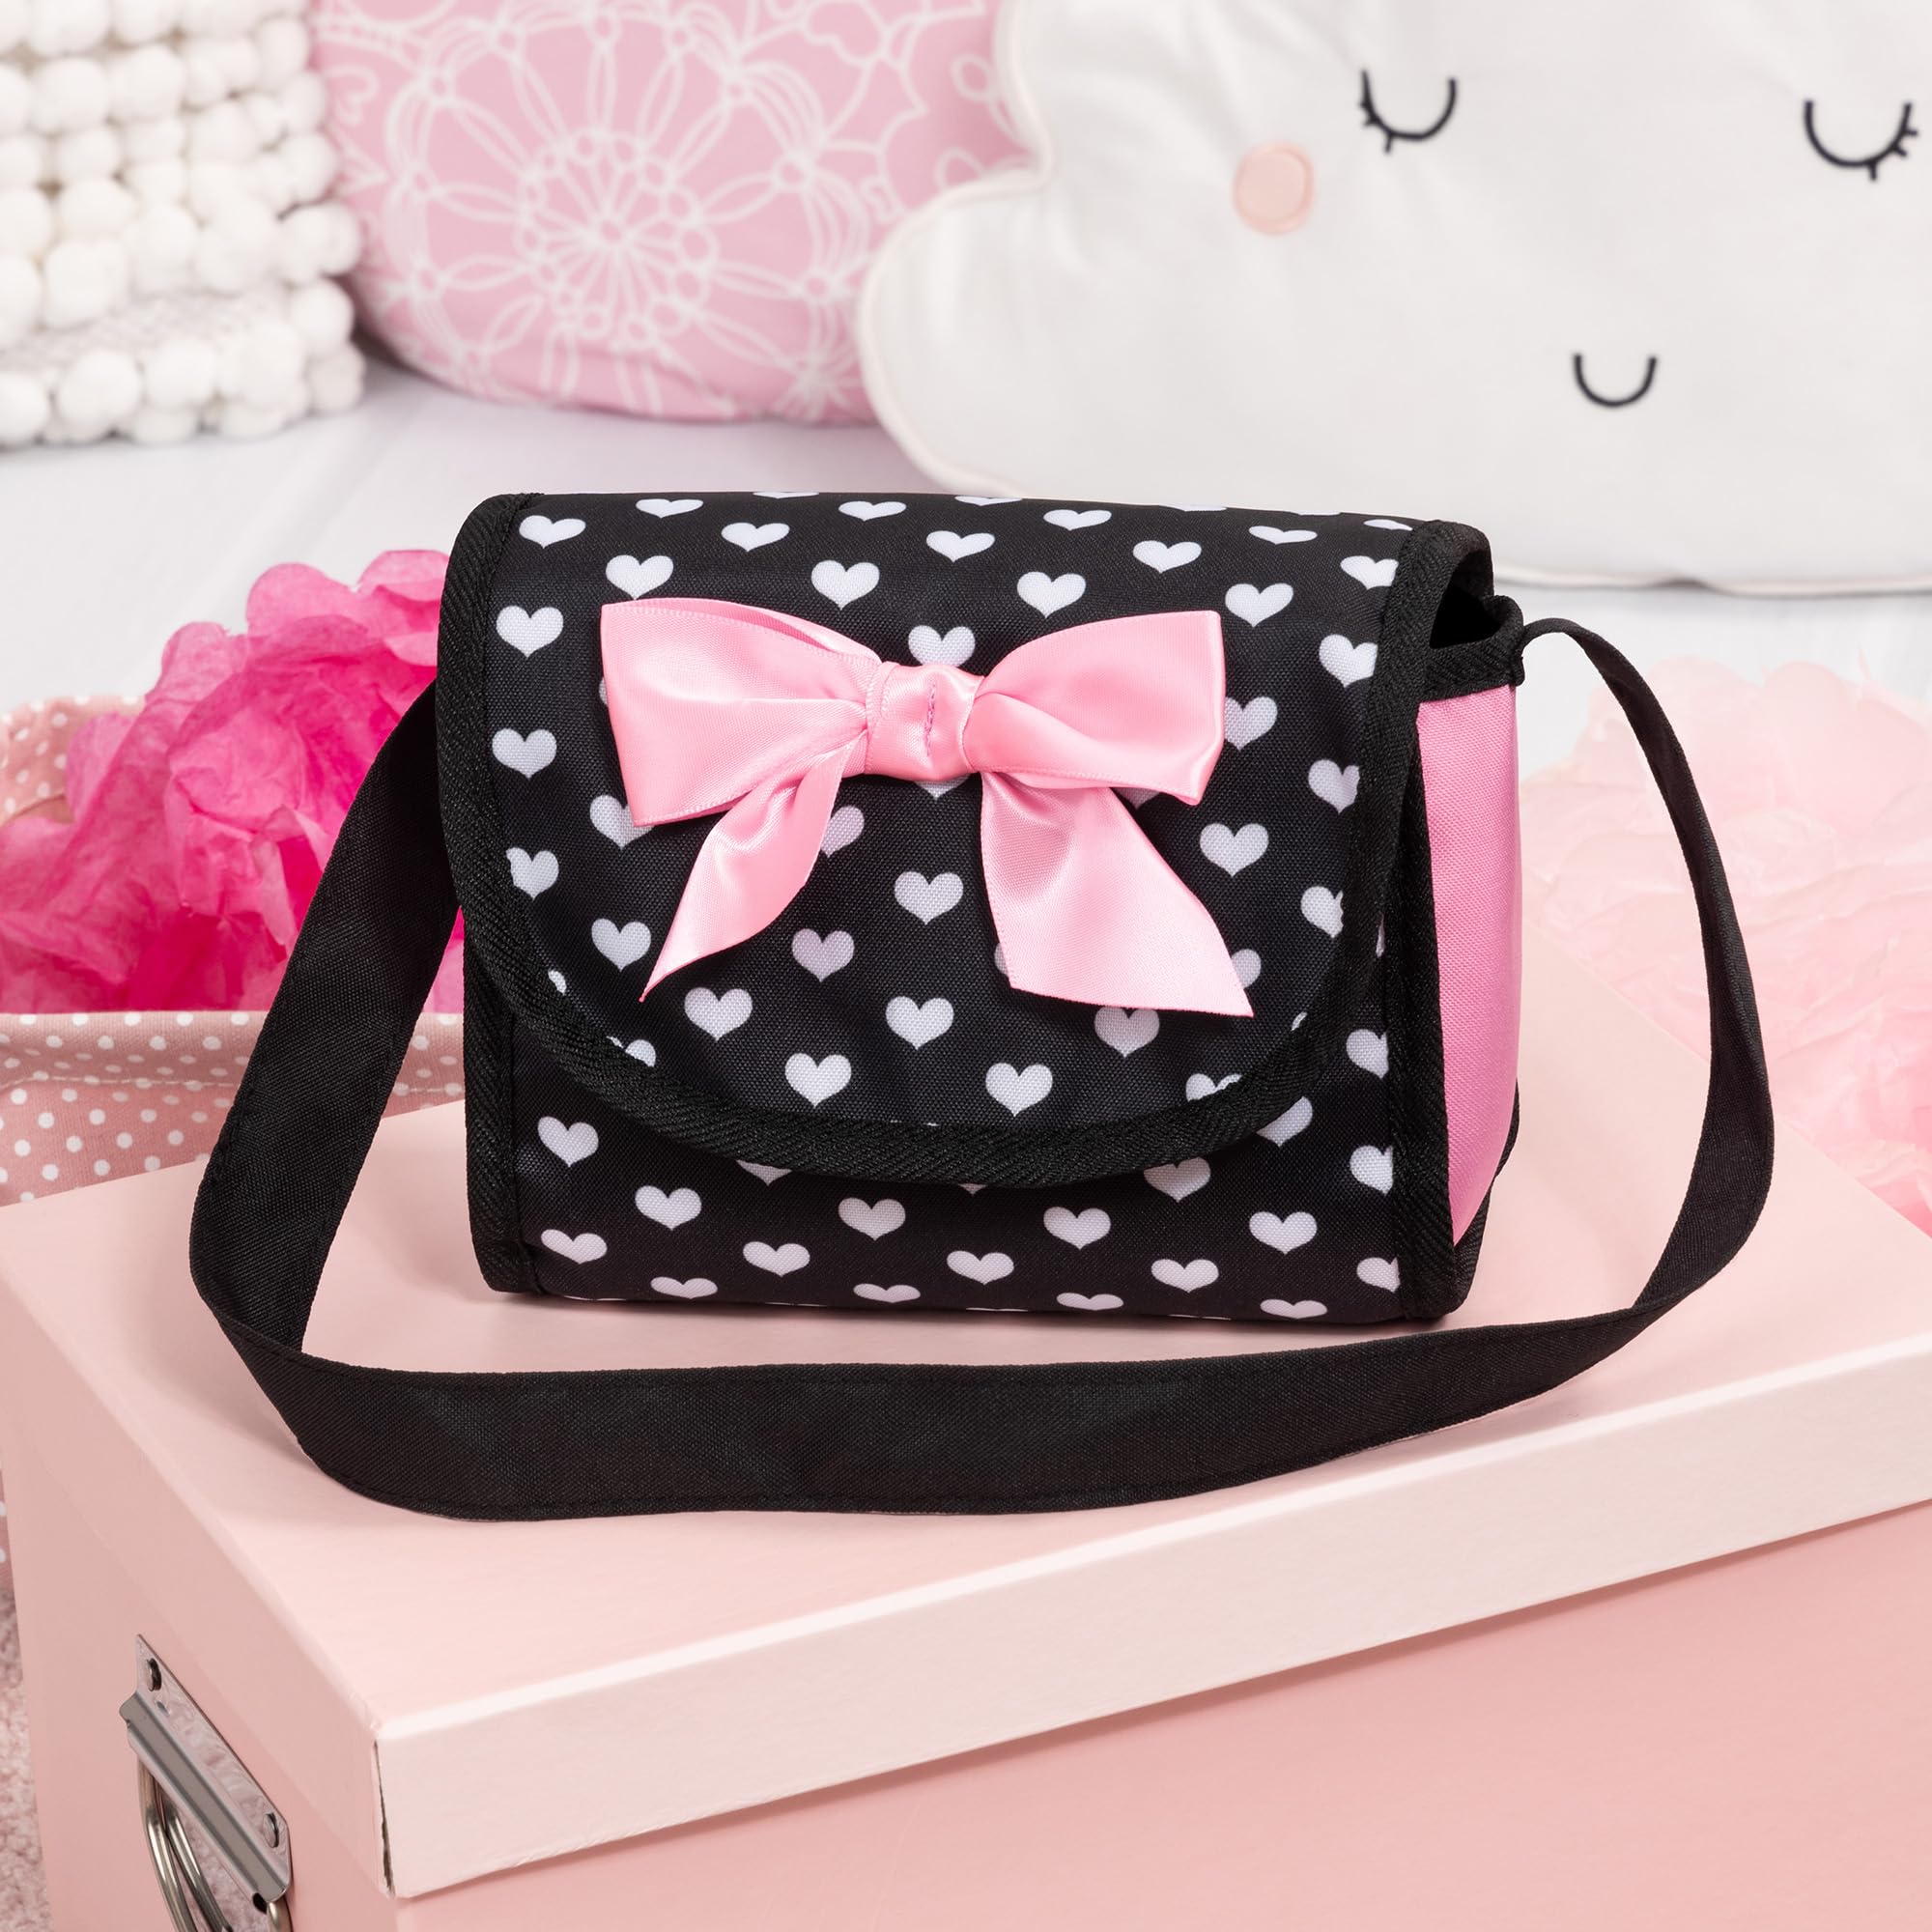 Bayer Design Dolls: Trendy Pram - Hearts Black & Pink - Includes Matching Shoulder Bag, for Dolls Up to 18